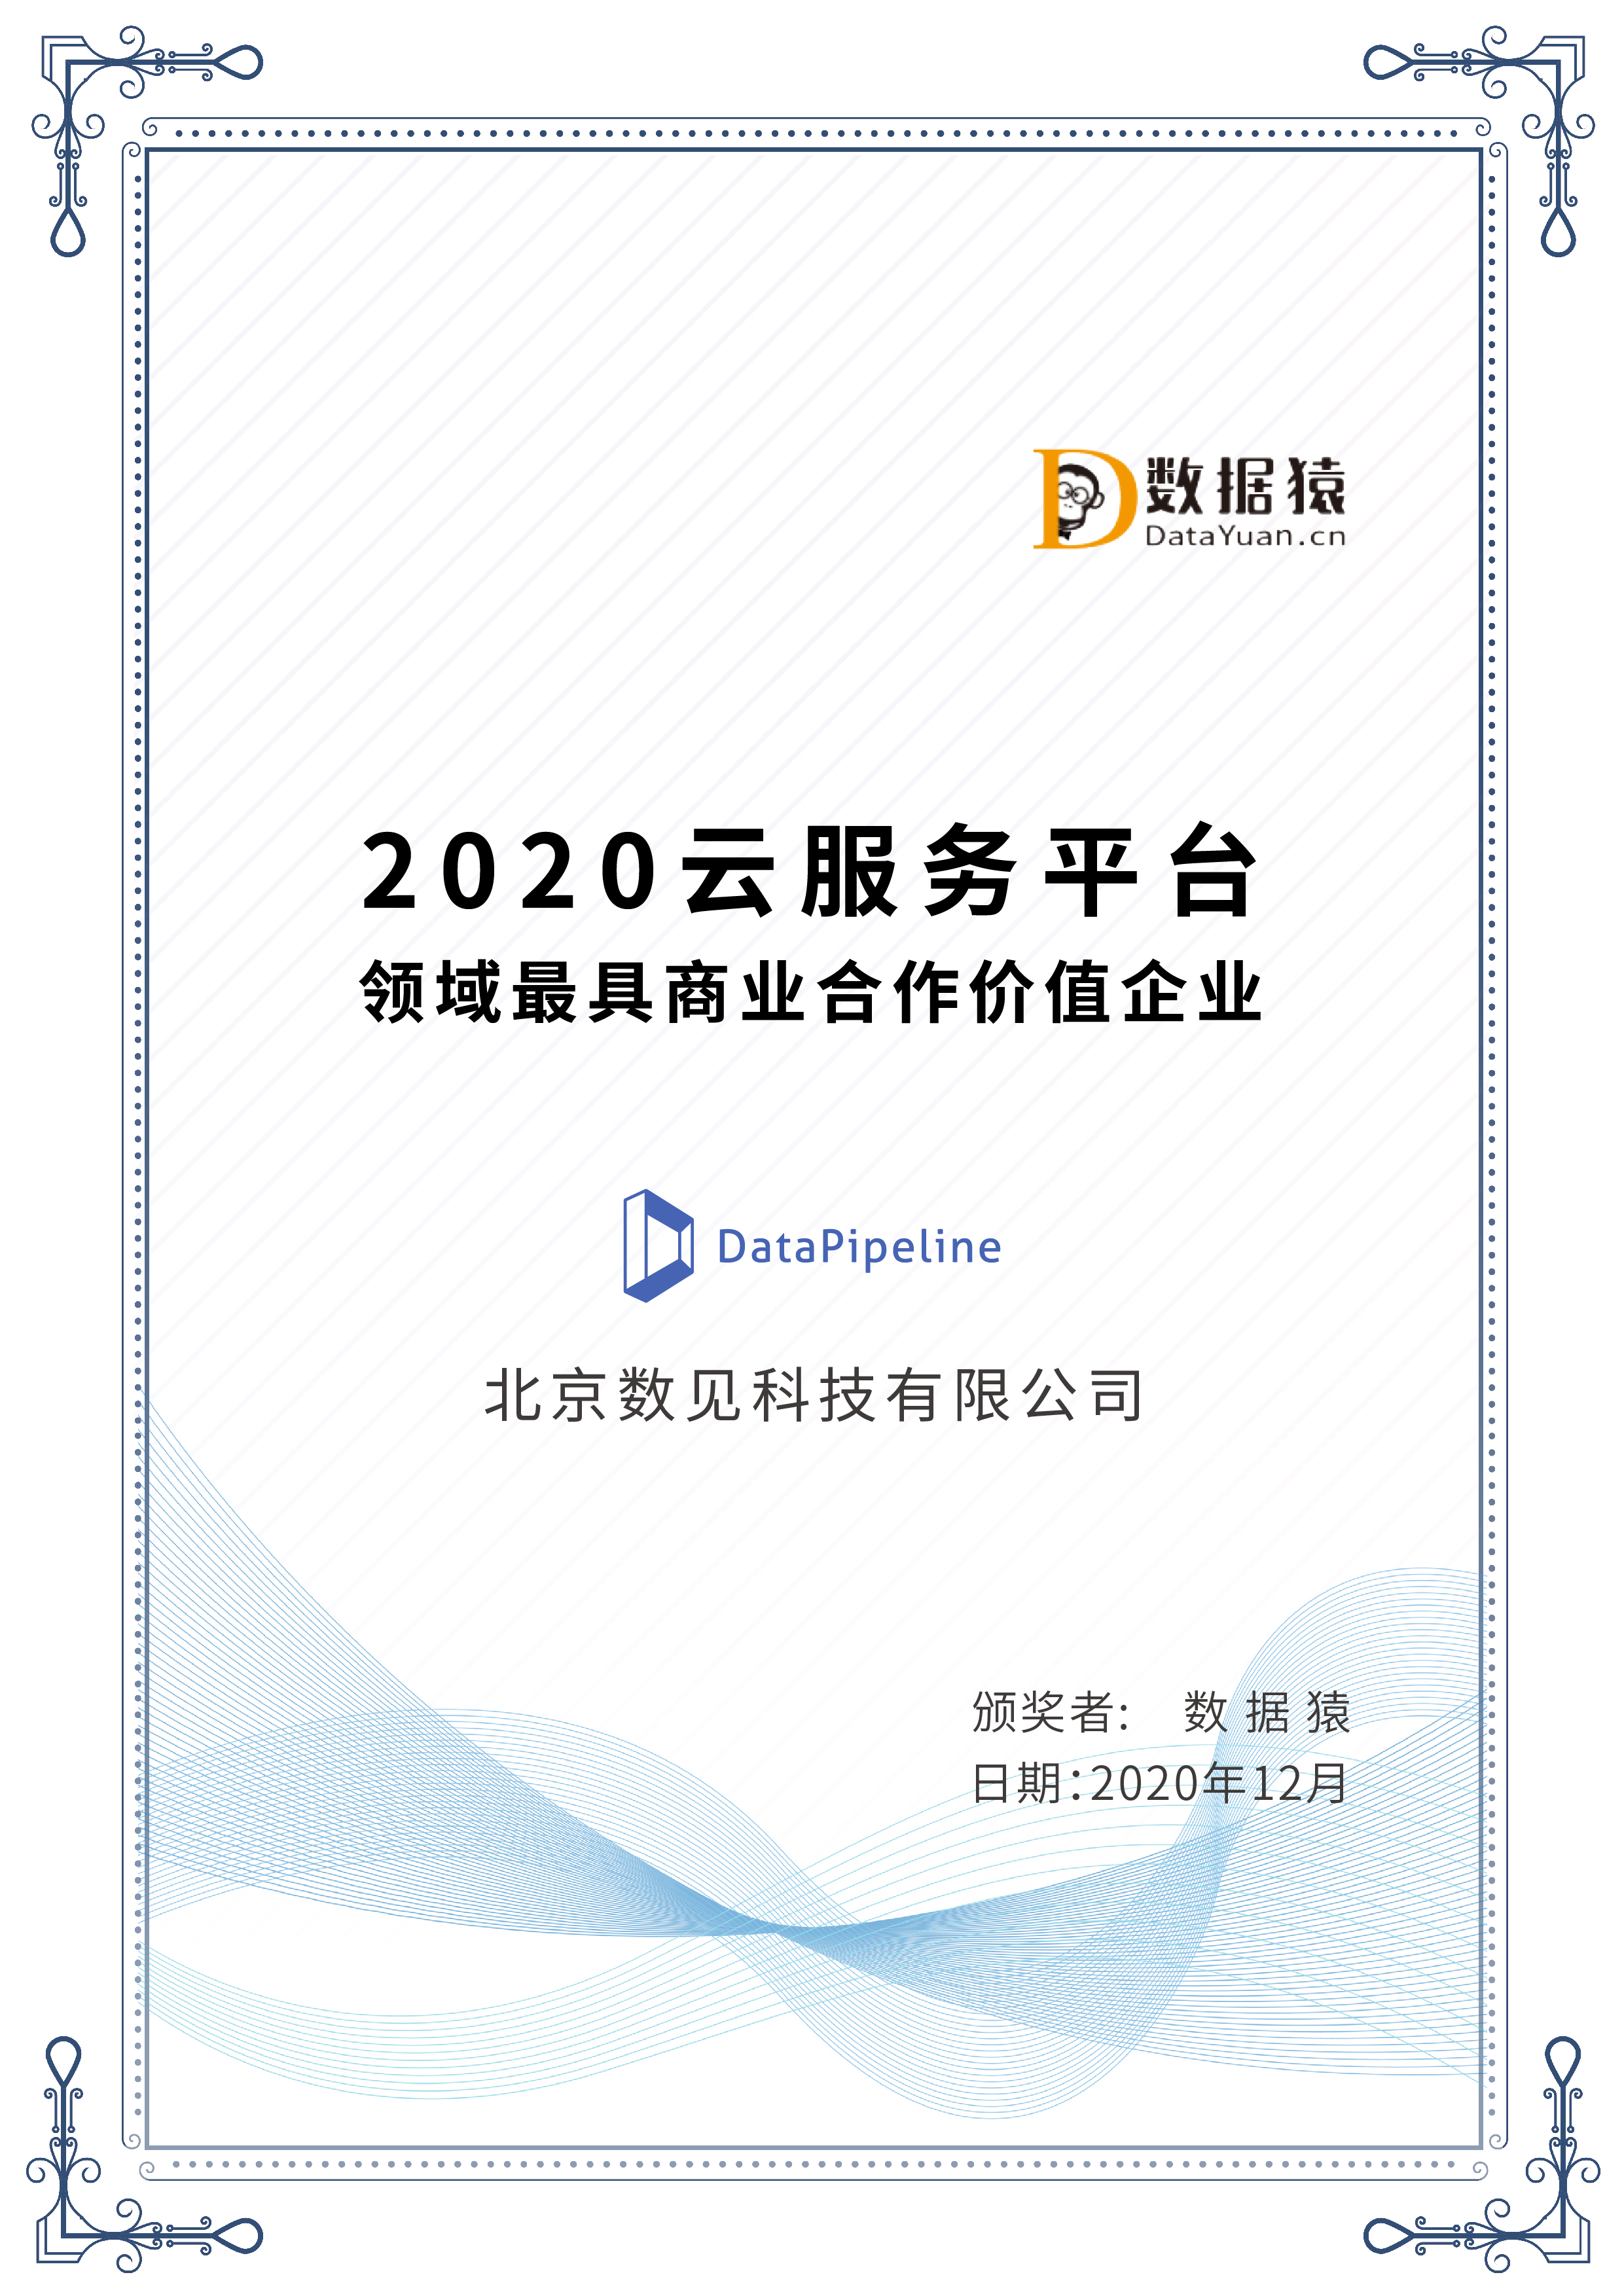 2020云服务平台领域最具商业合作价值企业